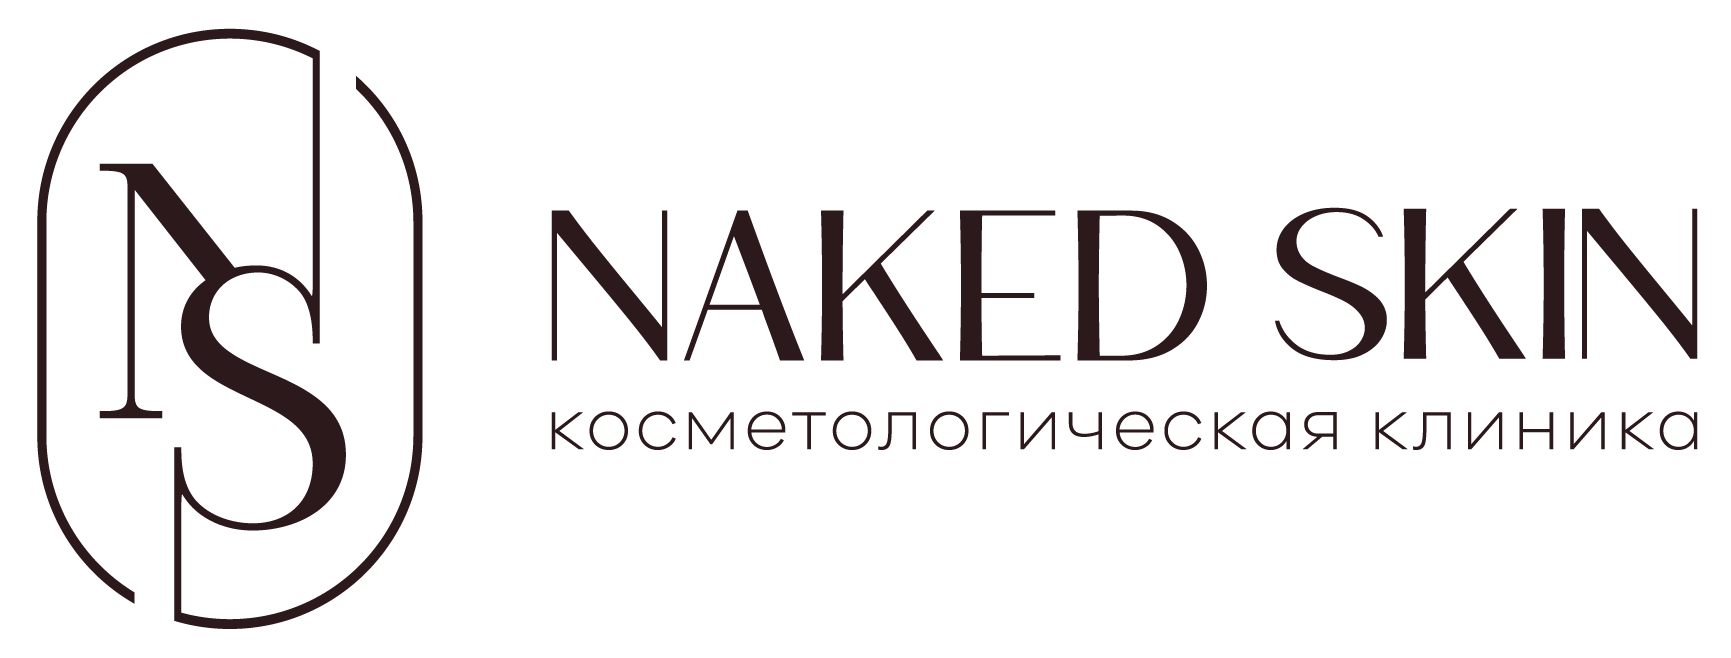 Клиника косметологии Naked Skin в Ростове-на-Дону. Лечение акне.